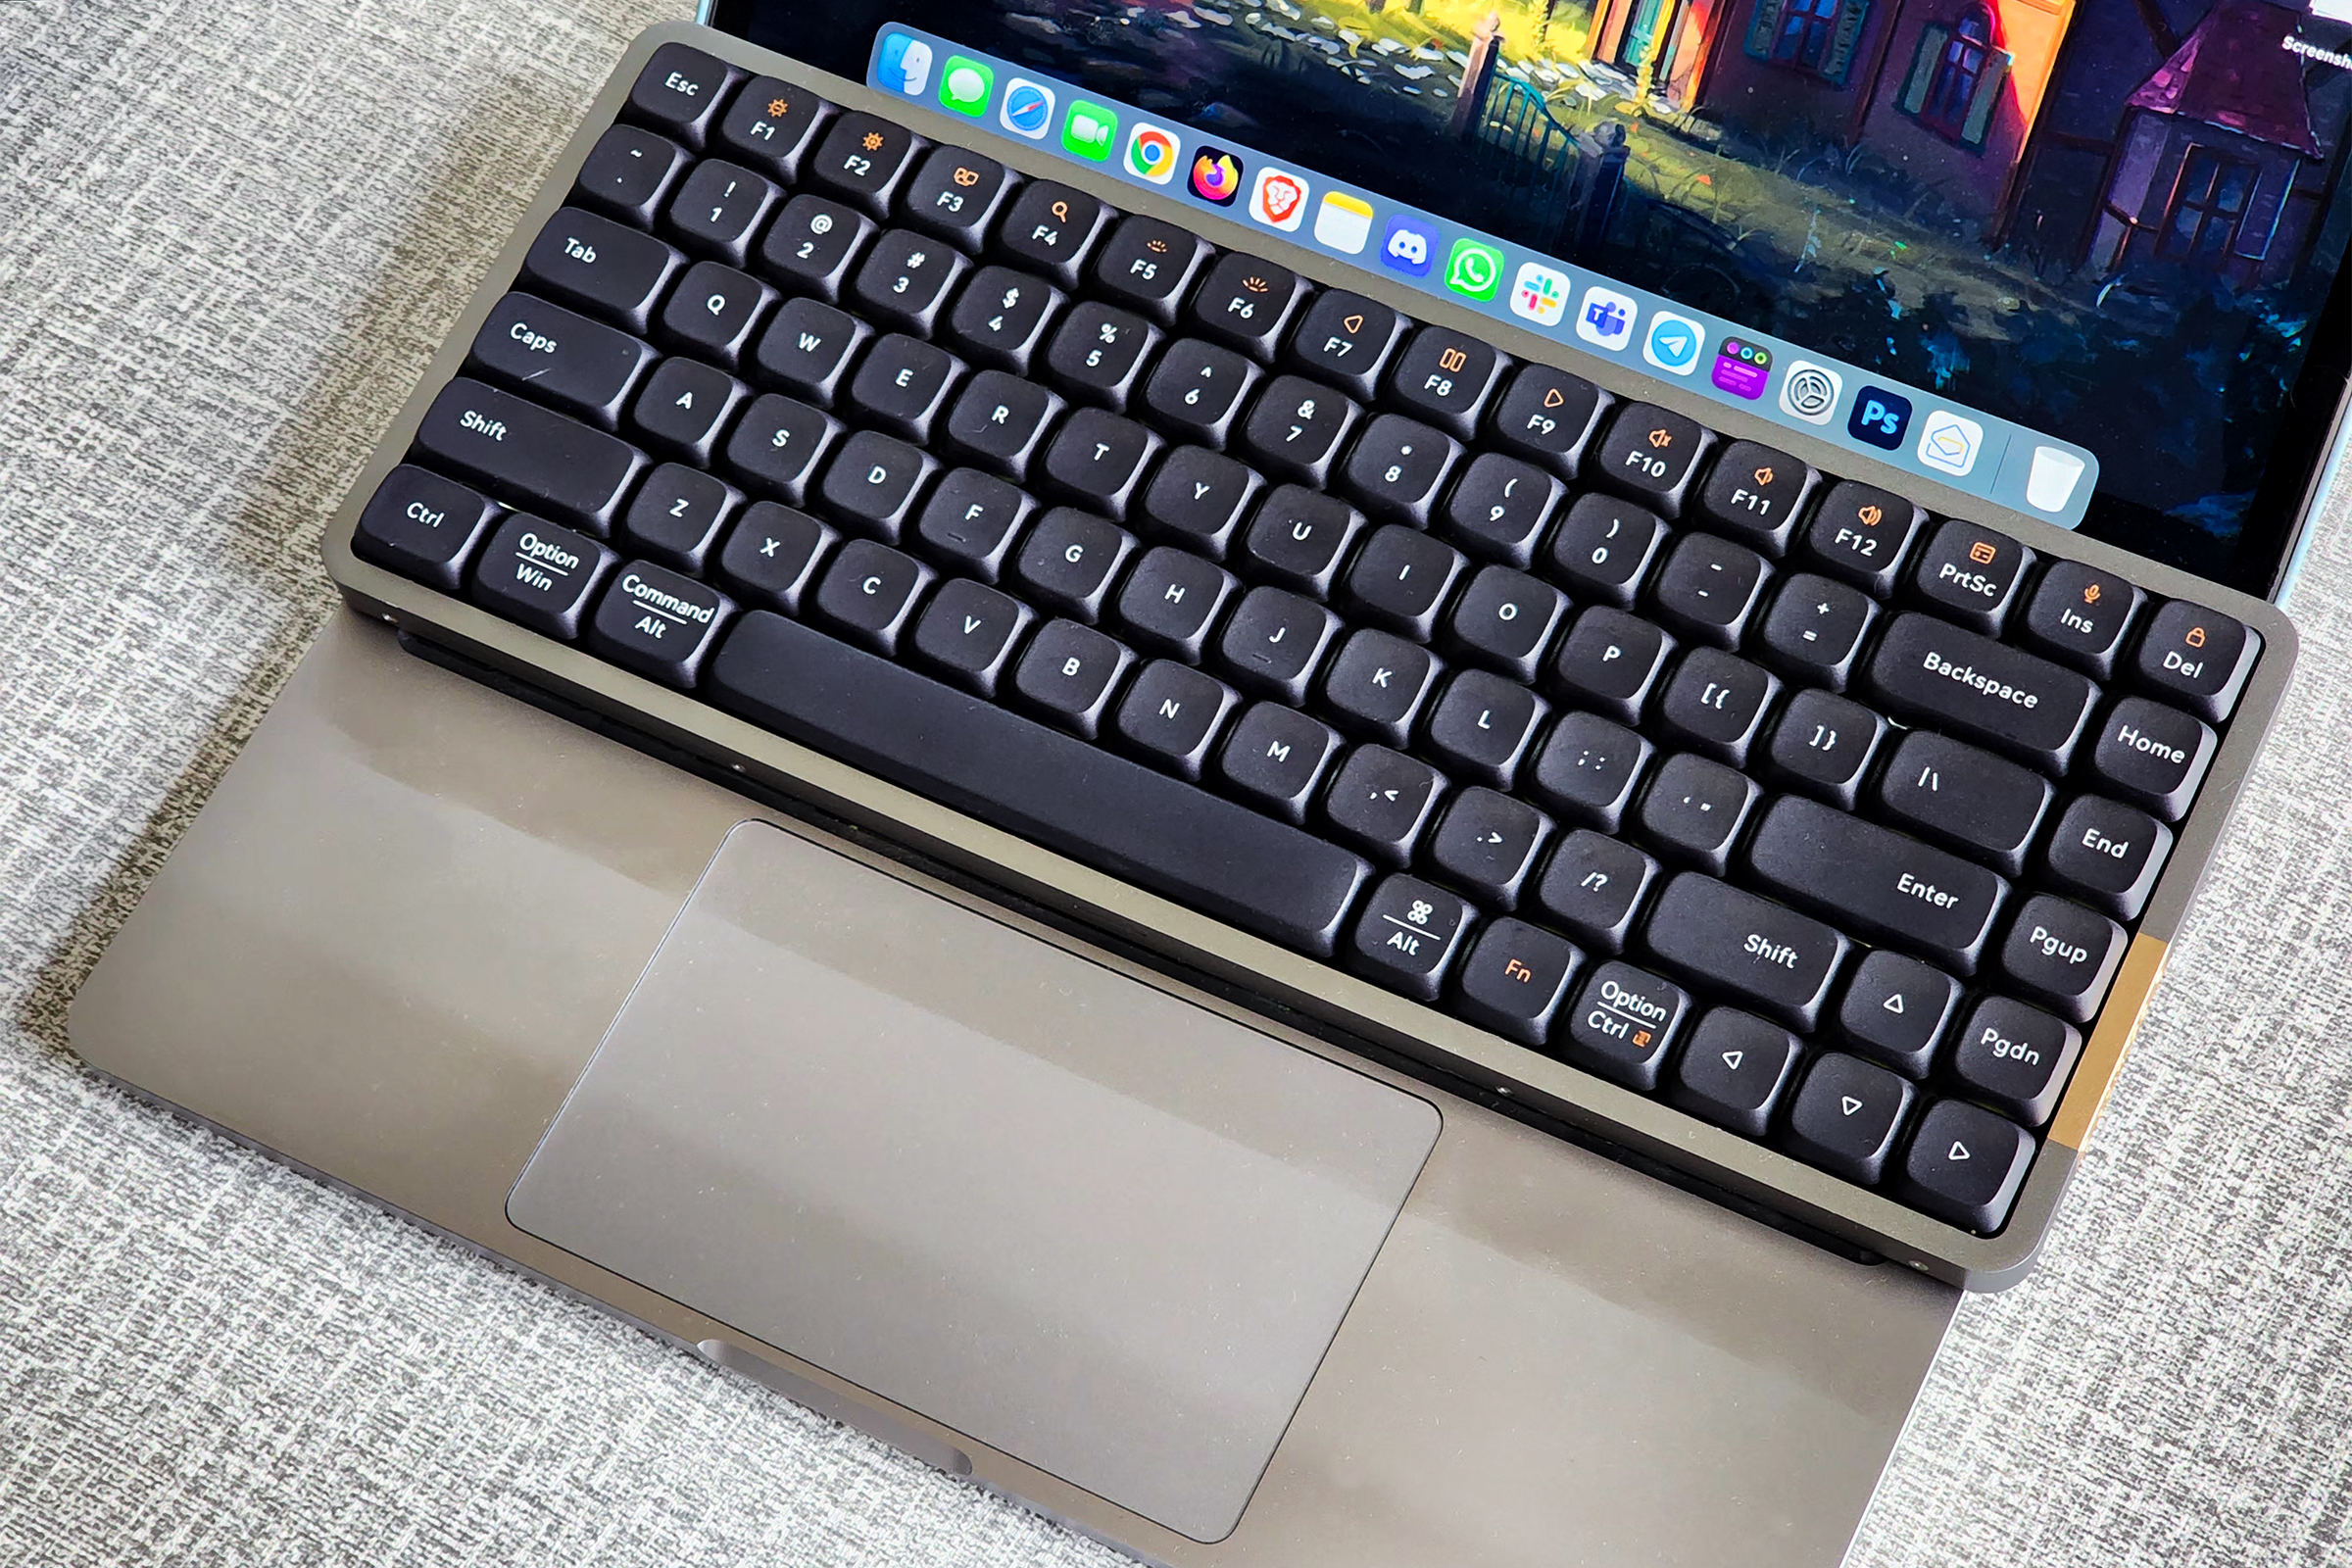 Lofree Flow low-profile mechanical keyboard on a 13-inch Apple MacBook Pro.